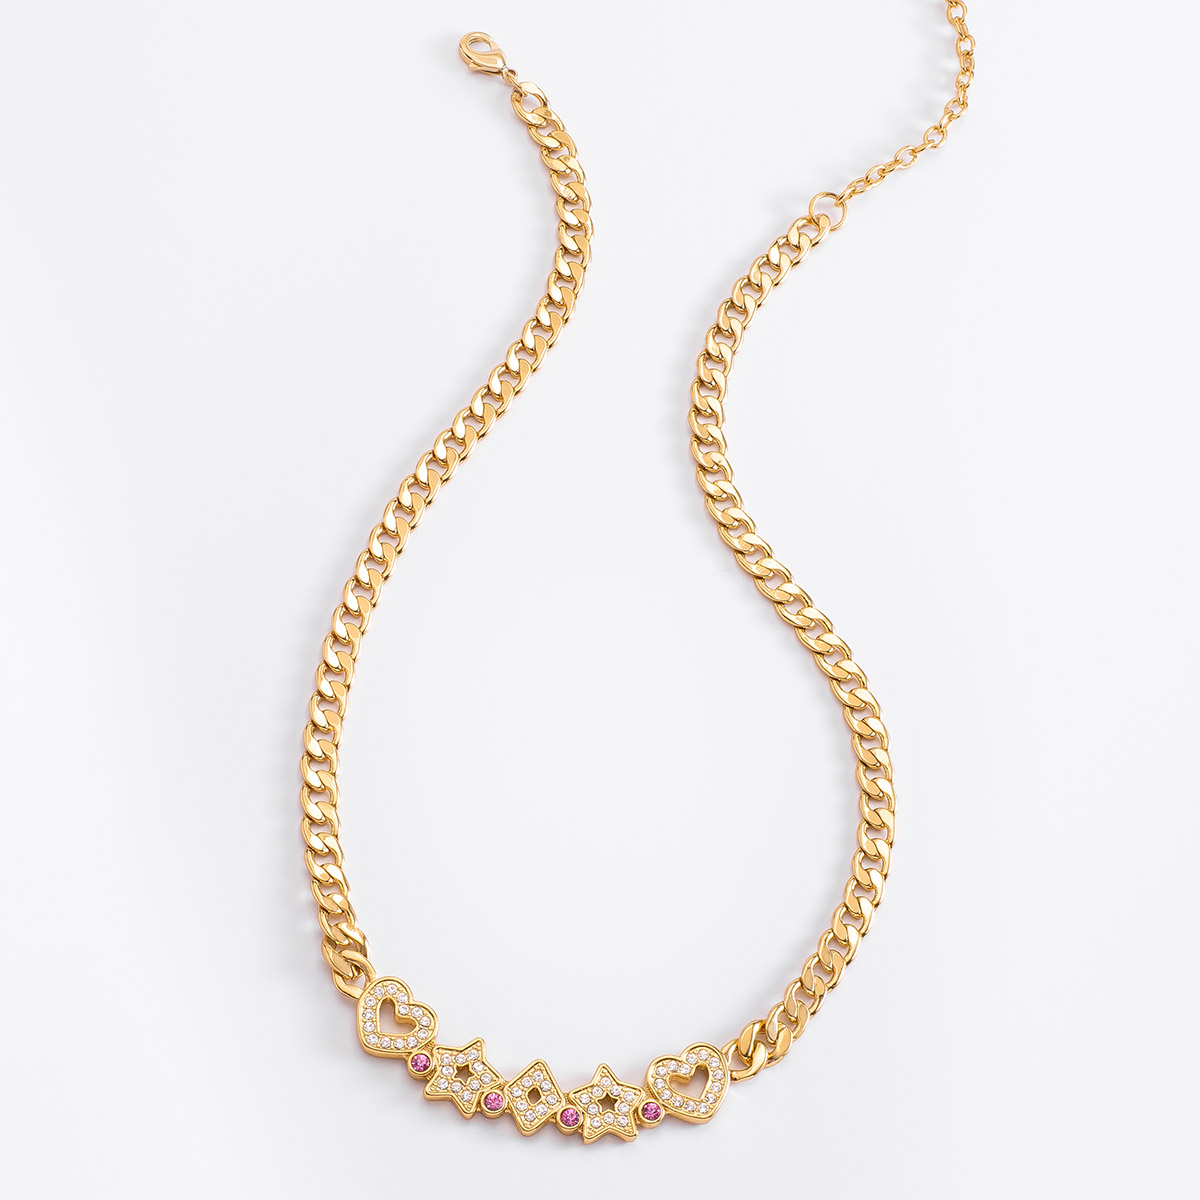 Collar de 42 cm + 10 cm de ext, en baño de oro, con piedras en tono rosa y cristal.